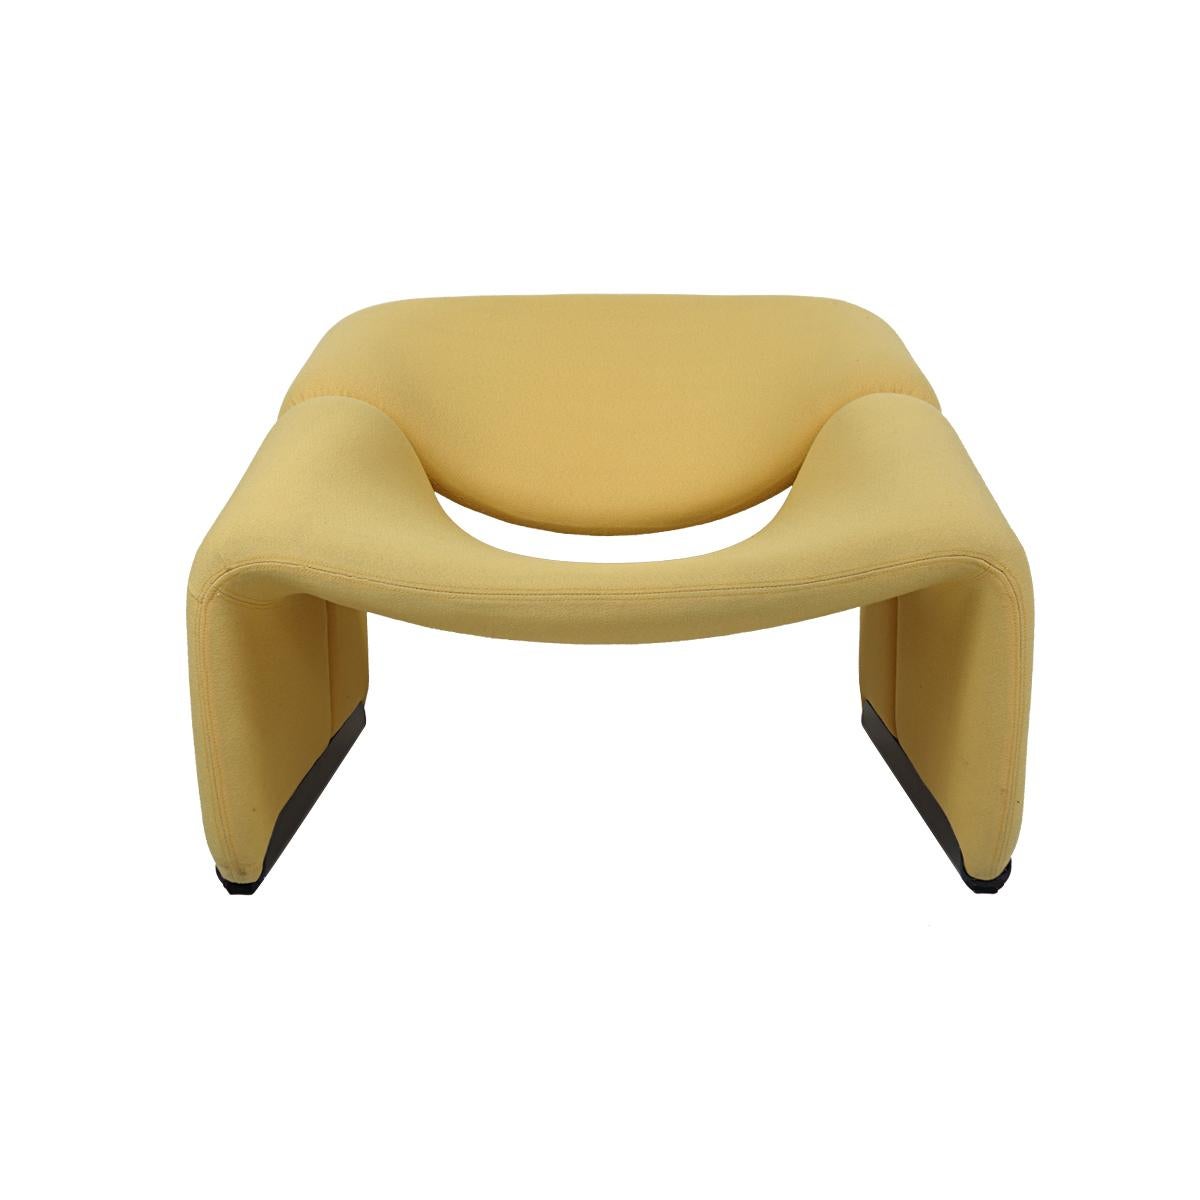 Der Groovy Chair oder F598, entworfen von Pierre Paulin für Artifort, ist ein echter Designklassiker. 
Er ist nicht nur sehr angenehm für das Auge, vor allem in dieser atemberaubenden Maisfarbe, sondern auch bemerkenswert bequem, vor allem